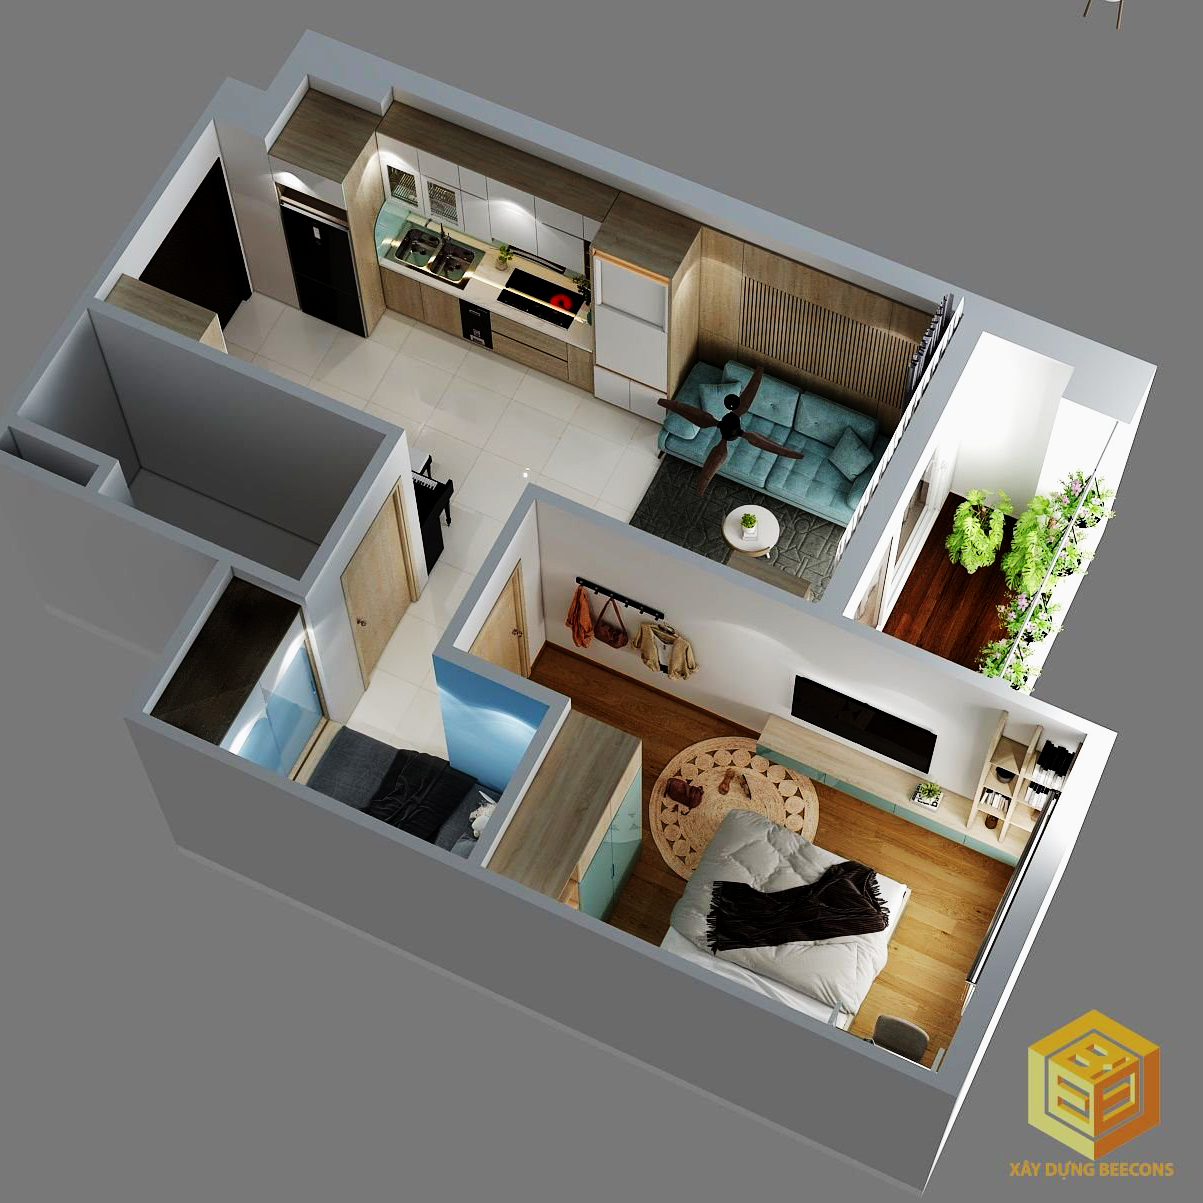 Các bước trên được Beecons gợi ý nhằm giúp bạn tìm ra phong cách riêng trong thiết kế sửa chữa nhà của bạn